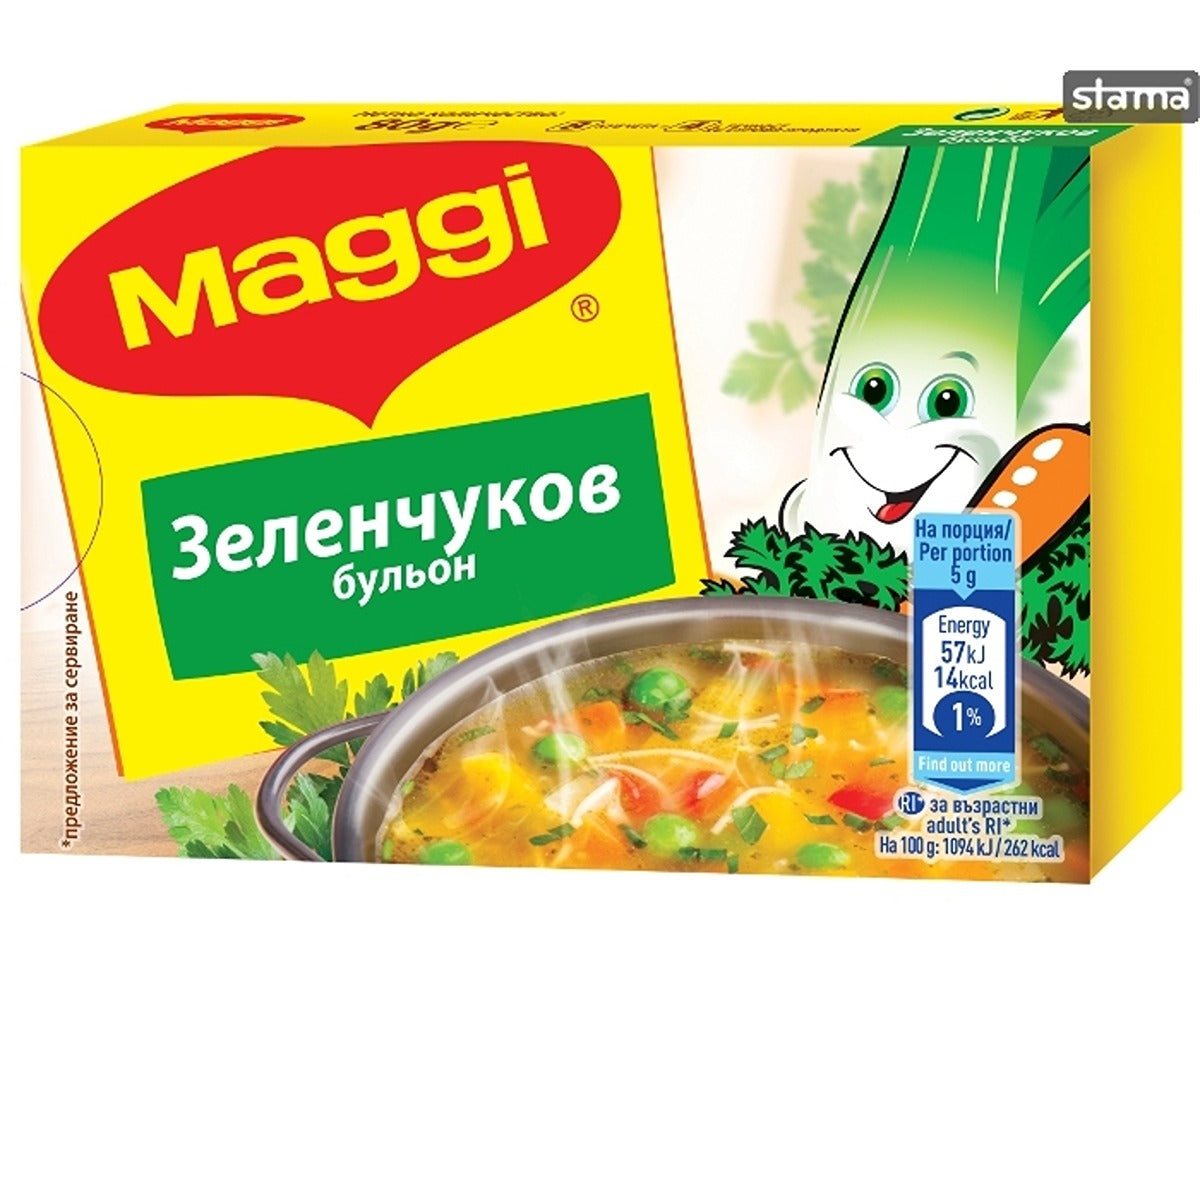 Maggi - Chicken Bouillon - 80g - Continental Food Store